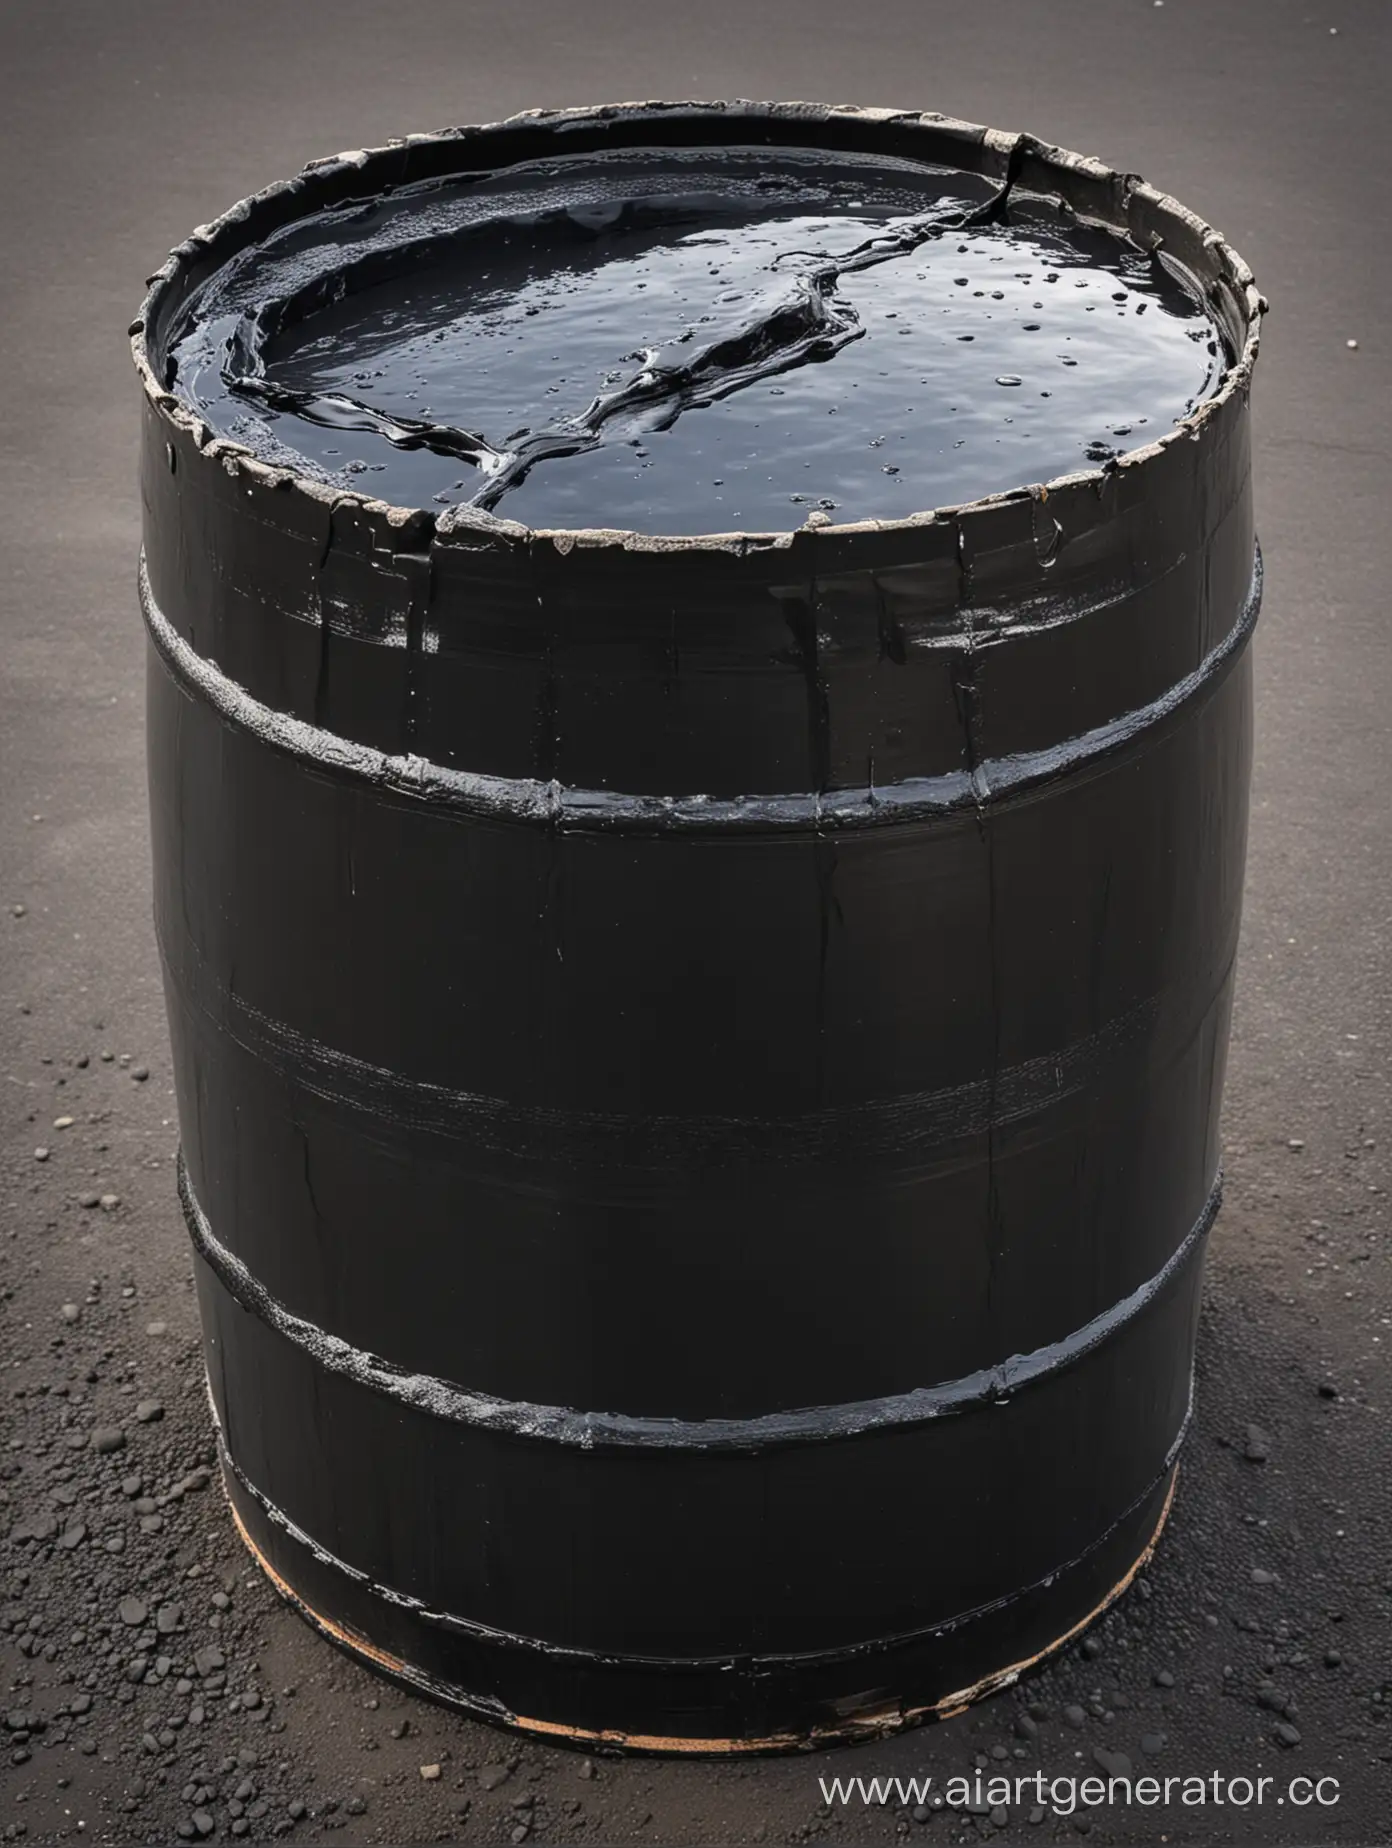 Rustic-Barrel-of-Bitumen-Industrial-Oil-Drum-in-Natural-Setting